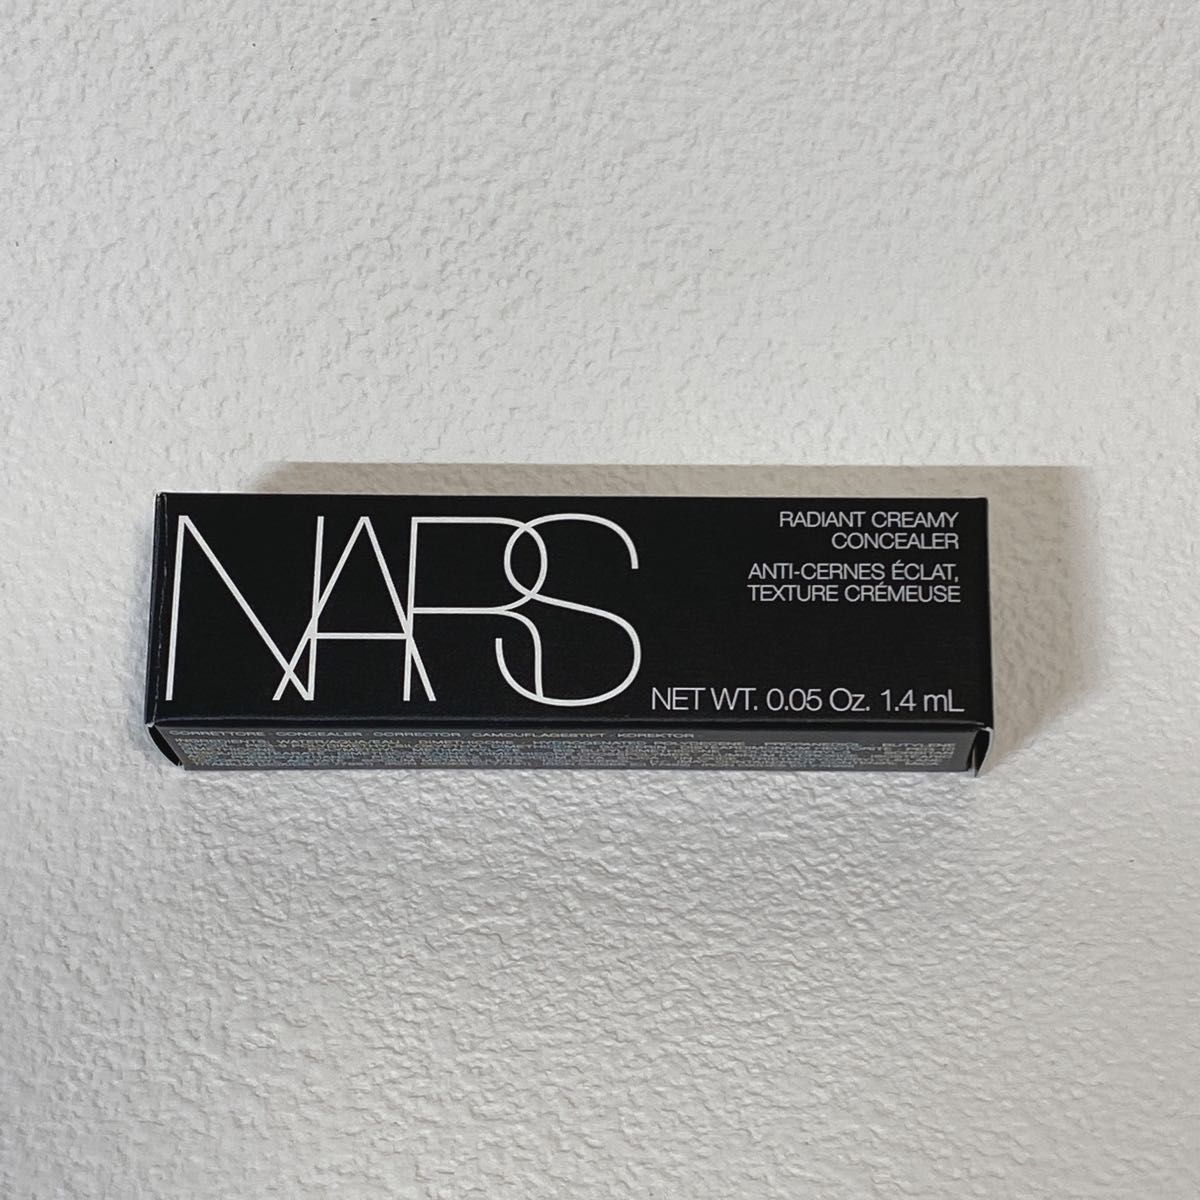 【非売品】NARS (ナーズ) ラディアントクリーミーコンシーラー 1.4ml